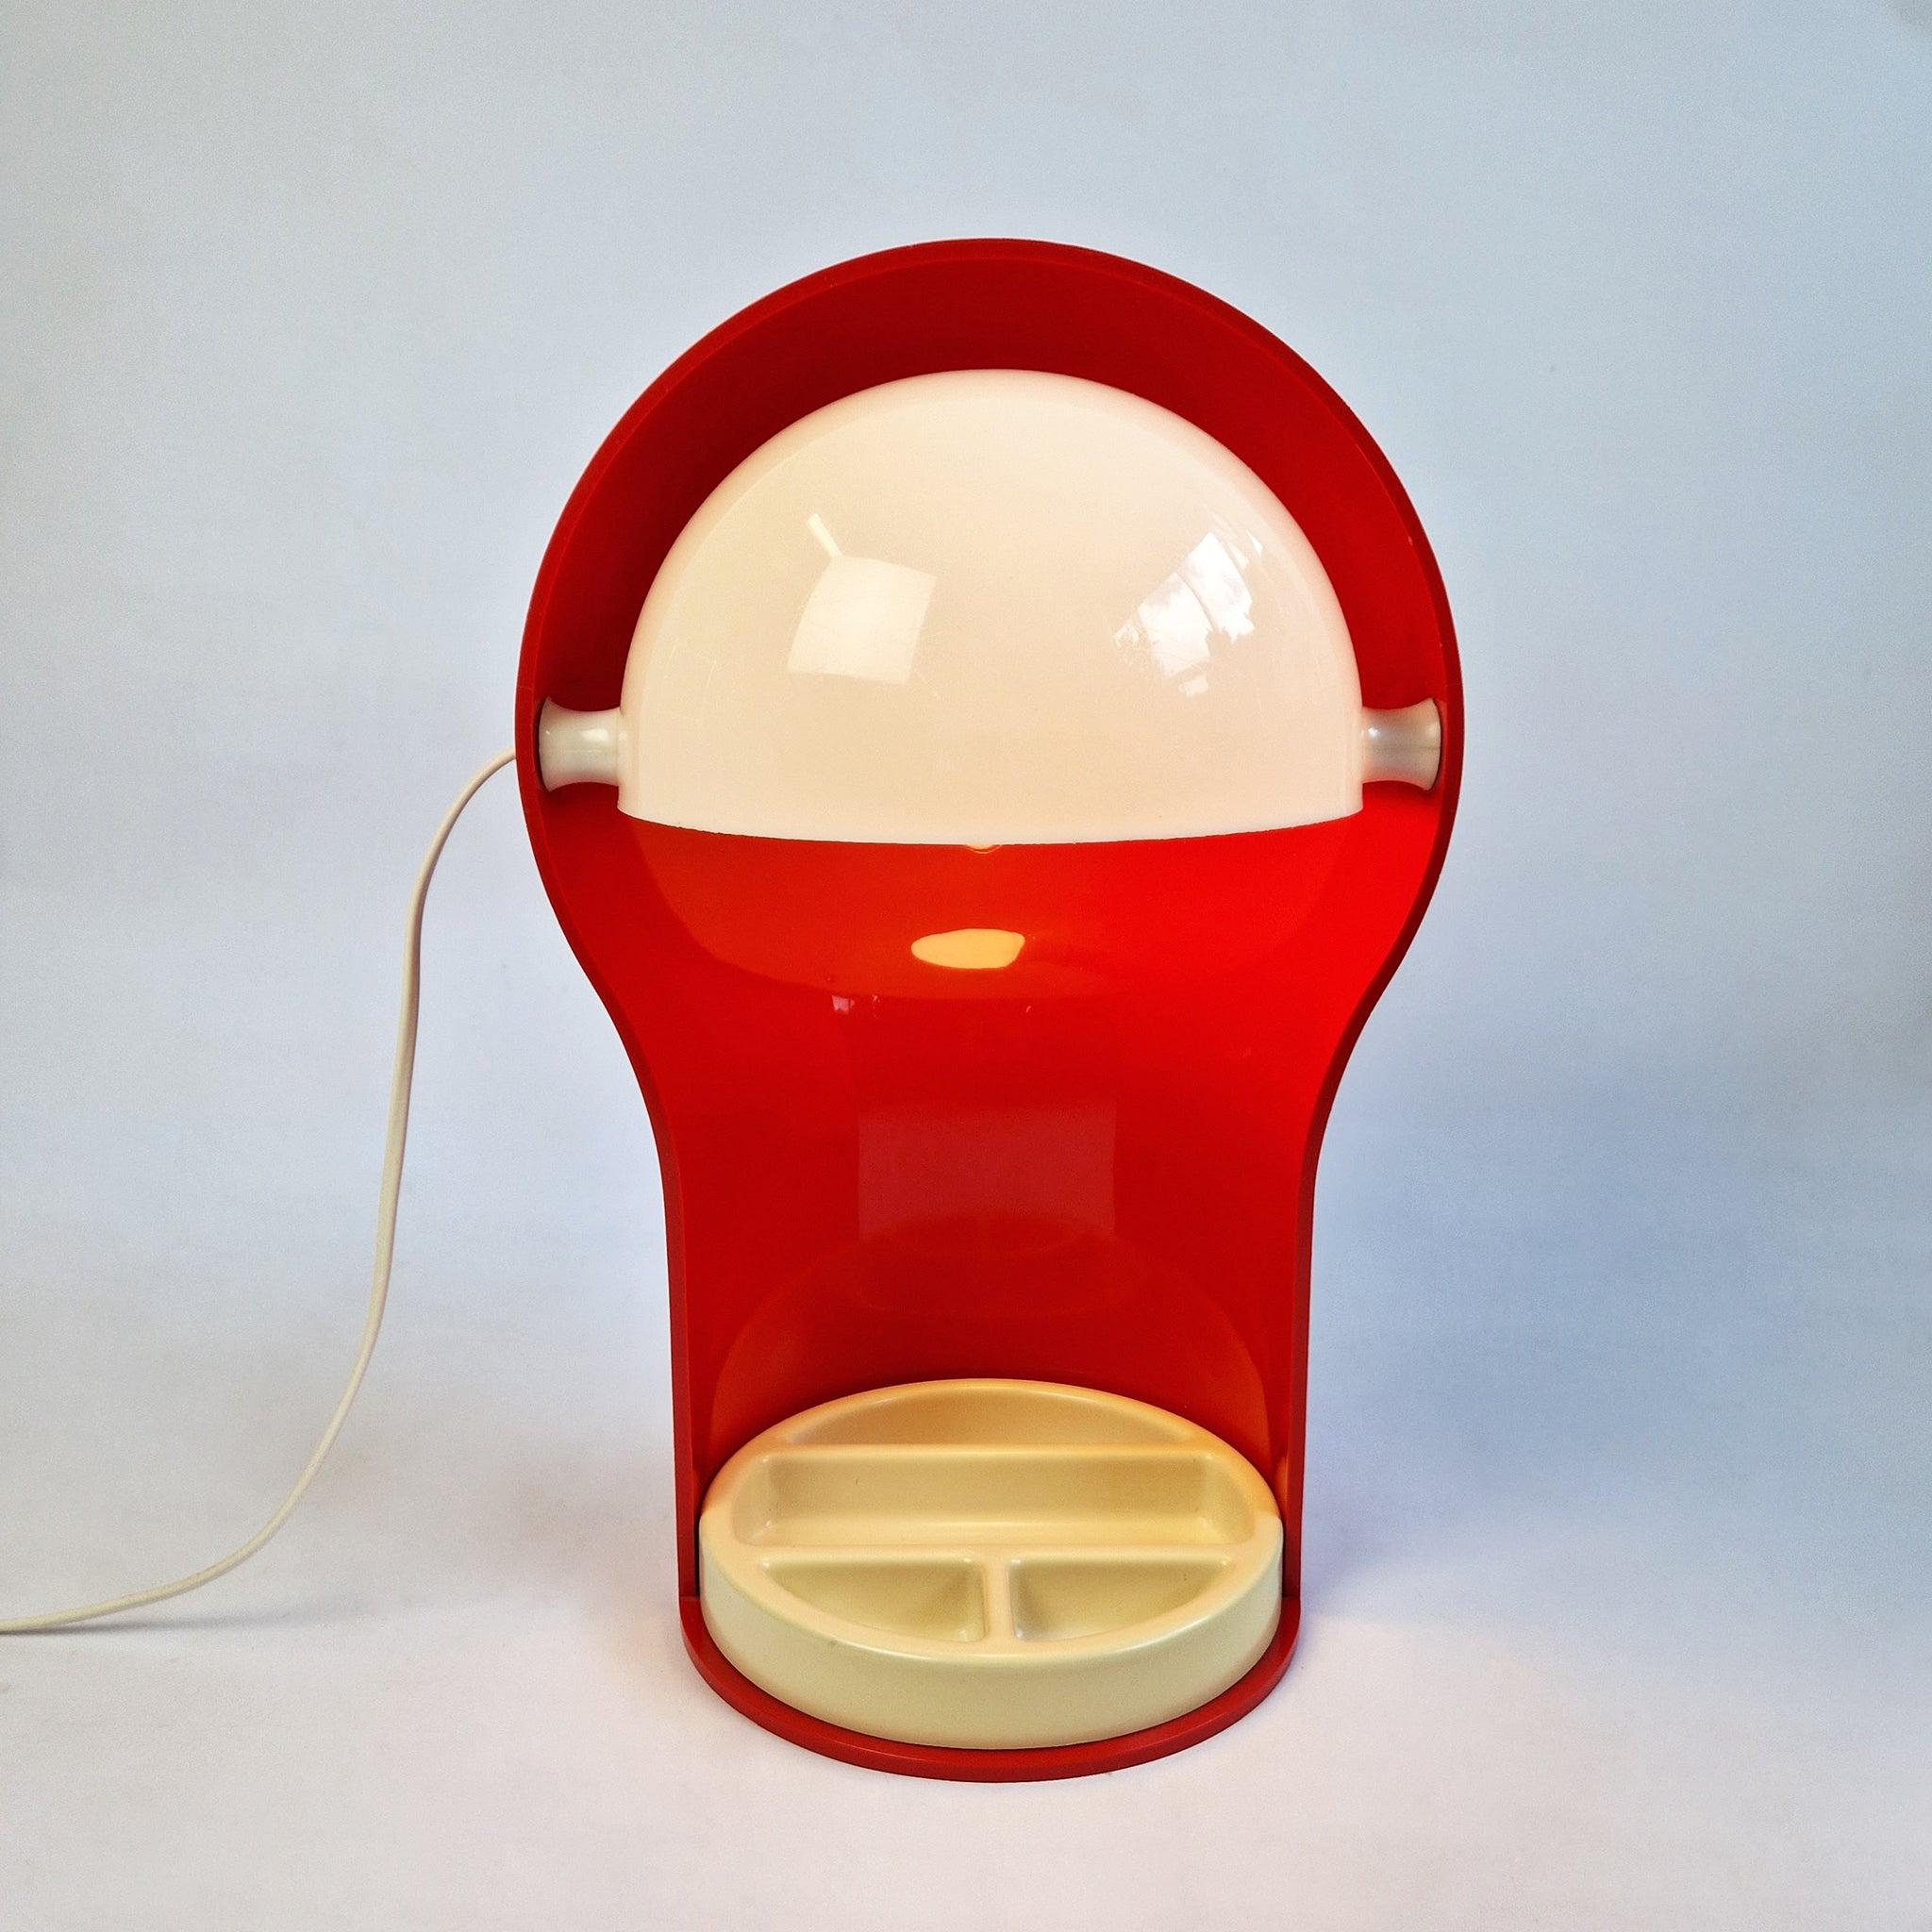 1970s Telegono table lamp by Vico Magistretti for Artemide